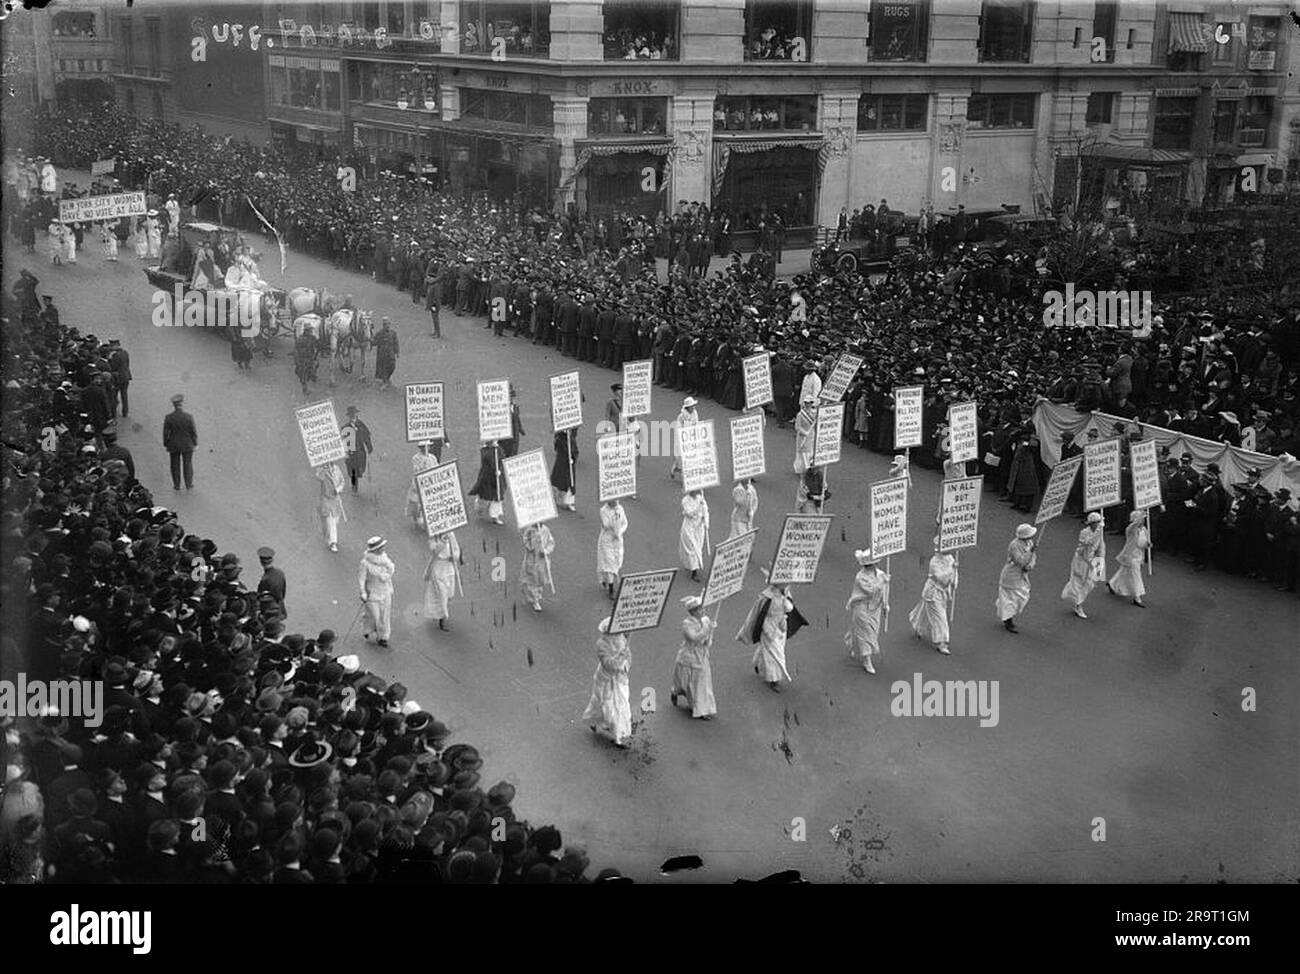 Il 23 ottobre 1915 a New York, le forze del movimento per il suffragio femminile si mobilitarono per creare una parata di migliaia di persone per smuovere le coscienze degli americani sulla questione della parità dei diritti. Foto Stock